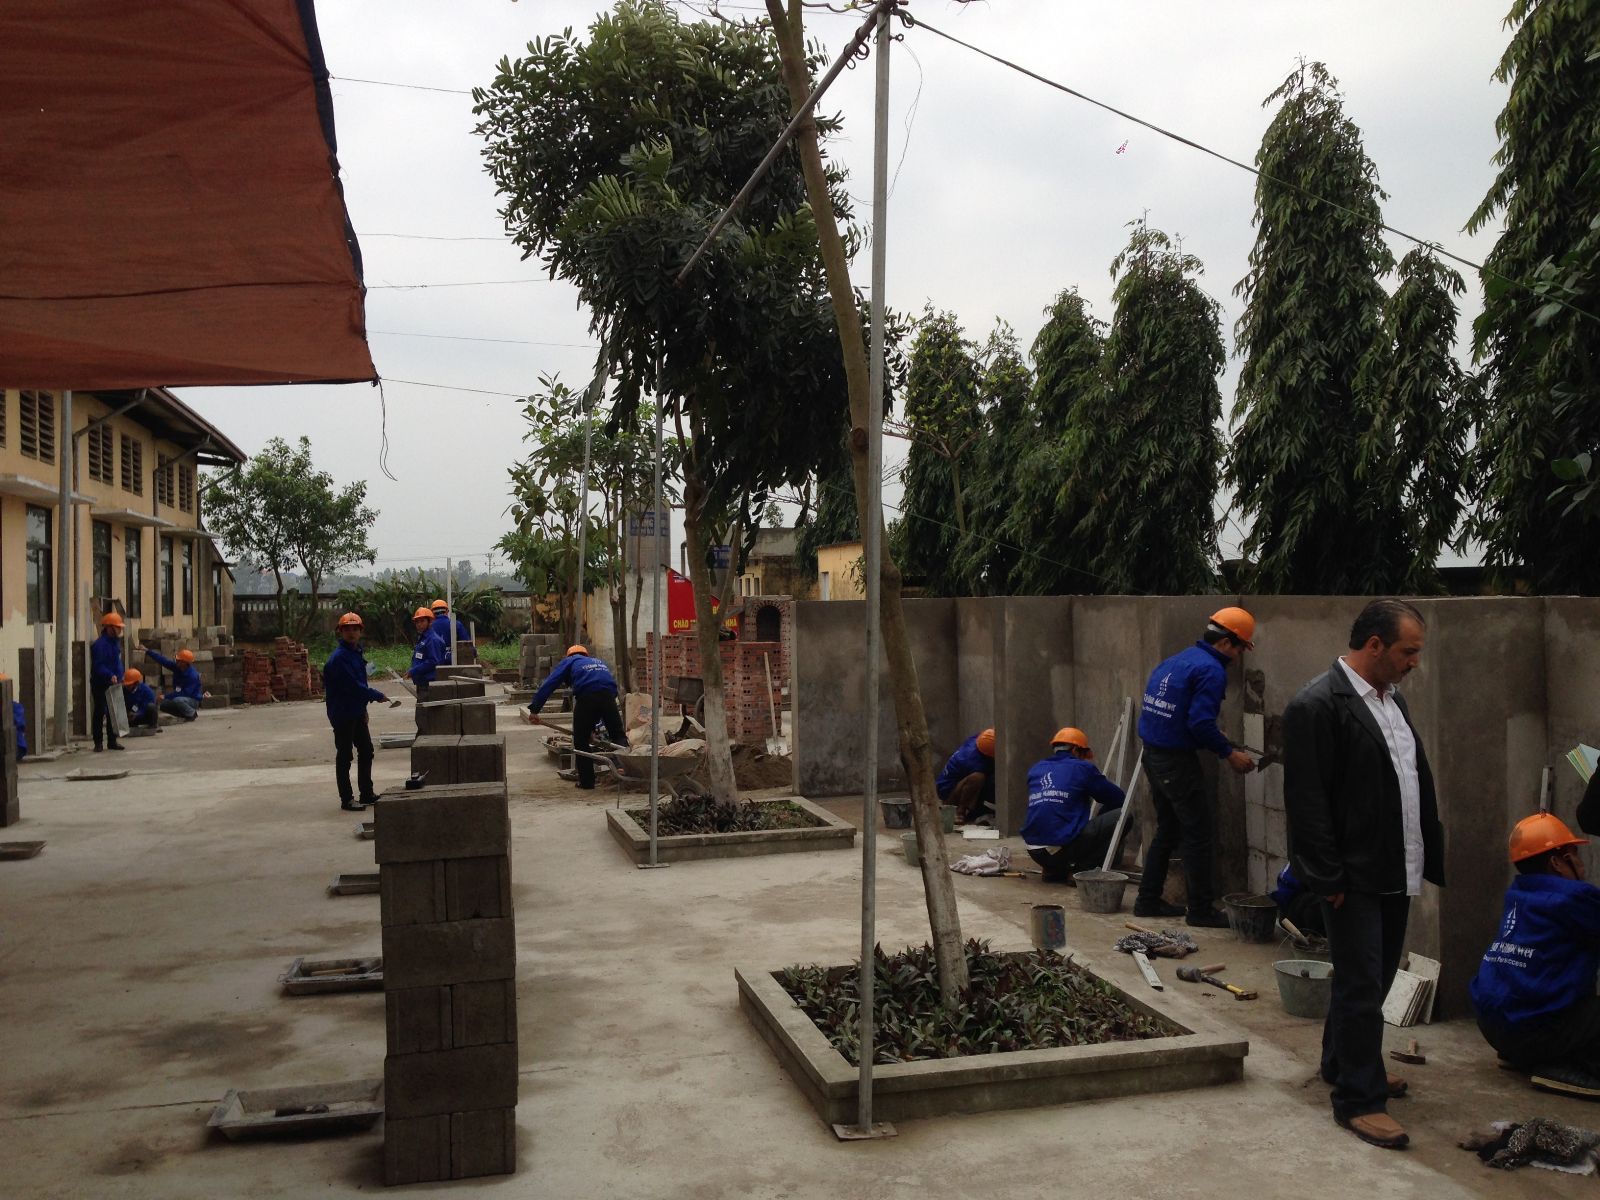 卡特尔迪亚尔-沙特本拉登集团卡特尔建筑公司(QD-SBG)第二次在越南的招聘活动已美满成功,越南人力资源供应商股份制公司已经提供300泥瓦匠工、水泥工和盖瓦工给QD-SBG.